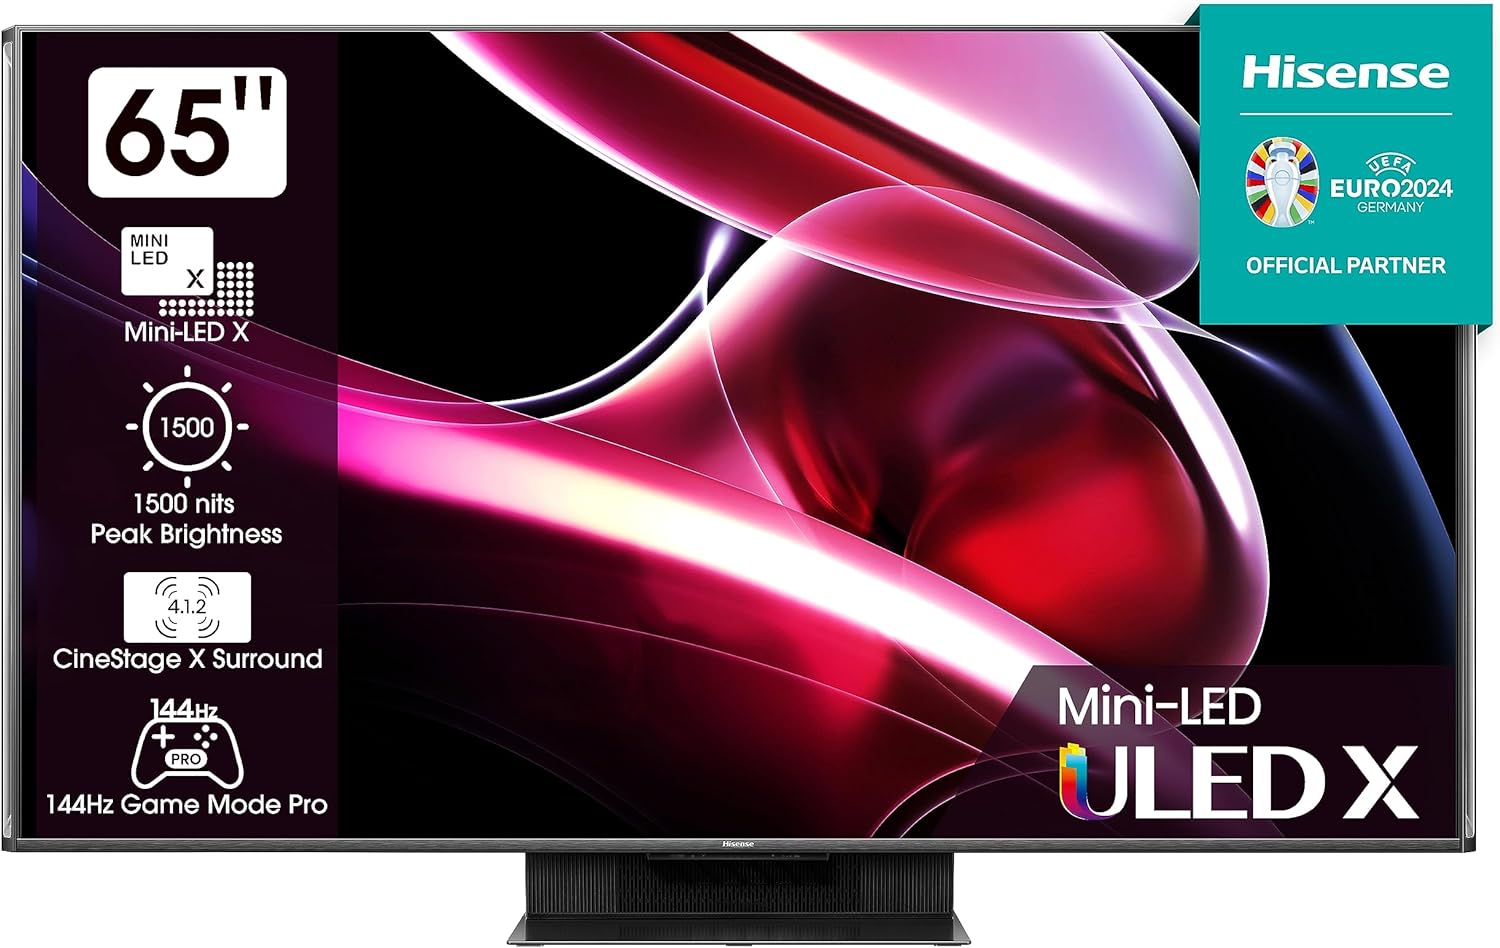 Hisense UXKQ Mini LED ULED 4K Smart TV 2023 NEW